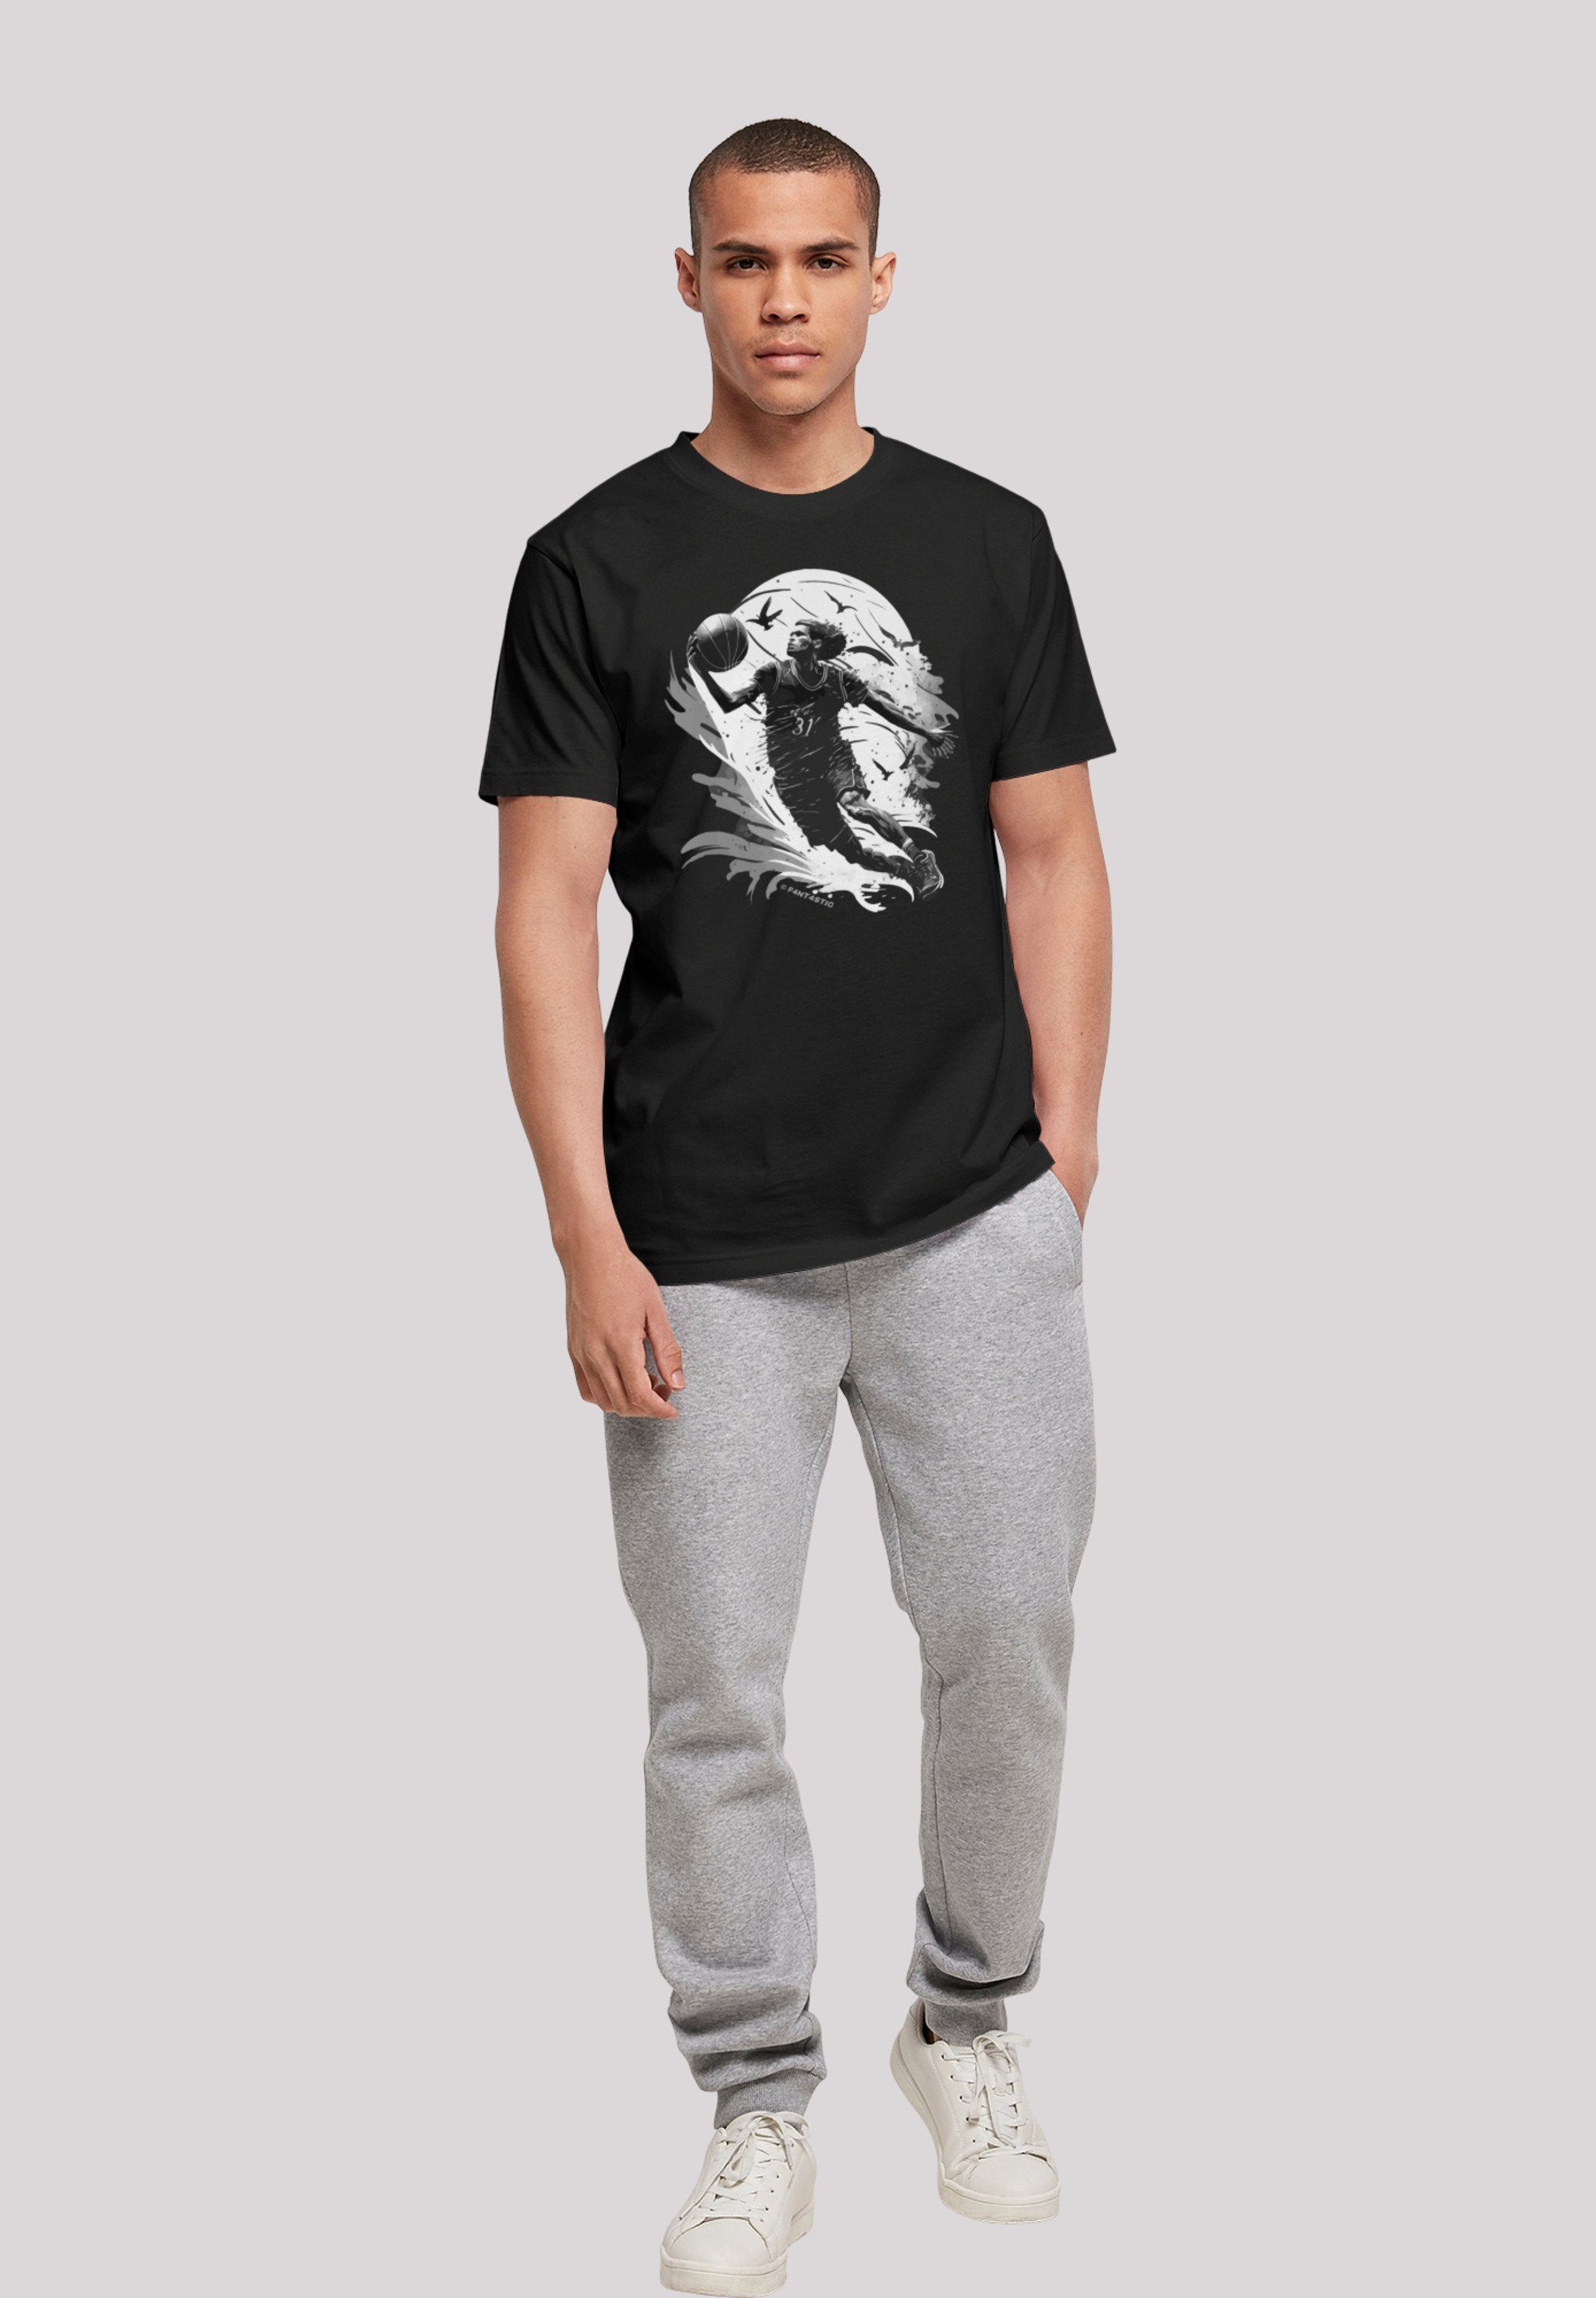 Print F4NT4STIC Spieler T-Shirt schwarz Basketball